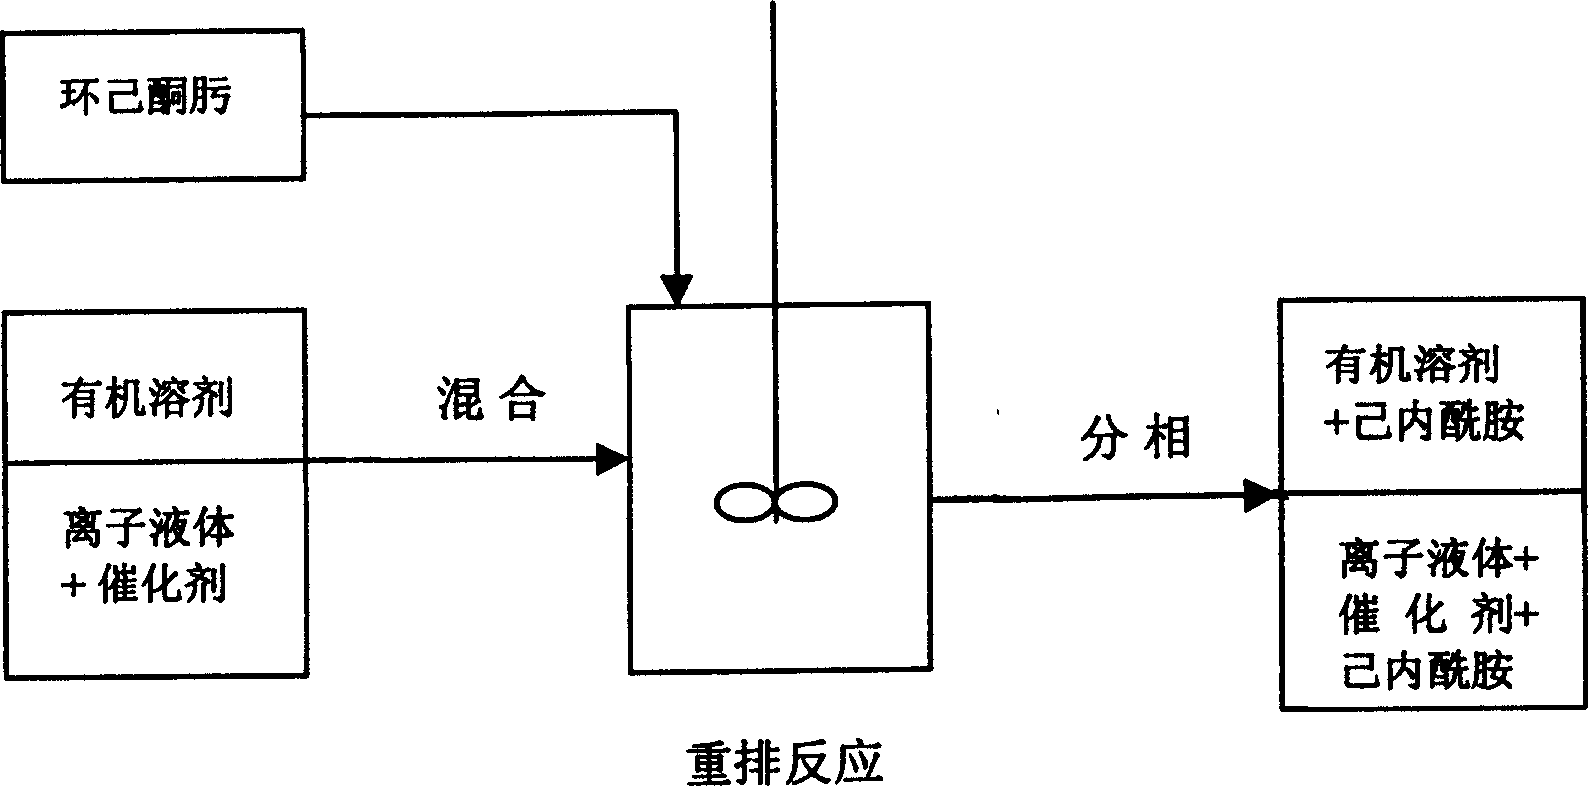 Process for preparation of caprolactam